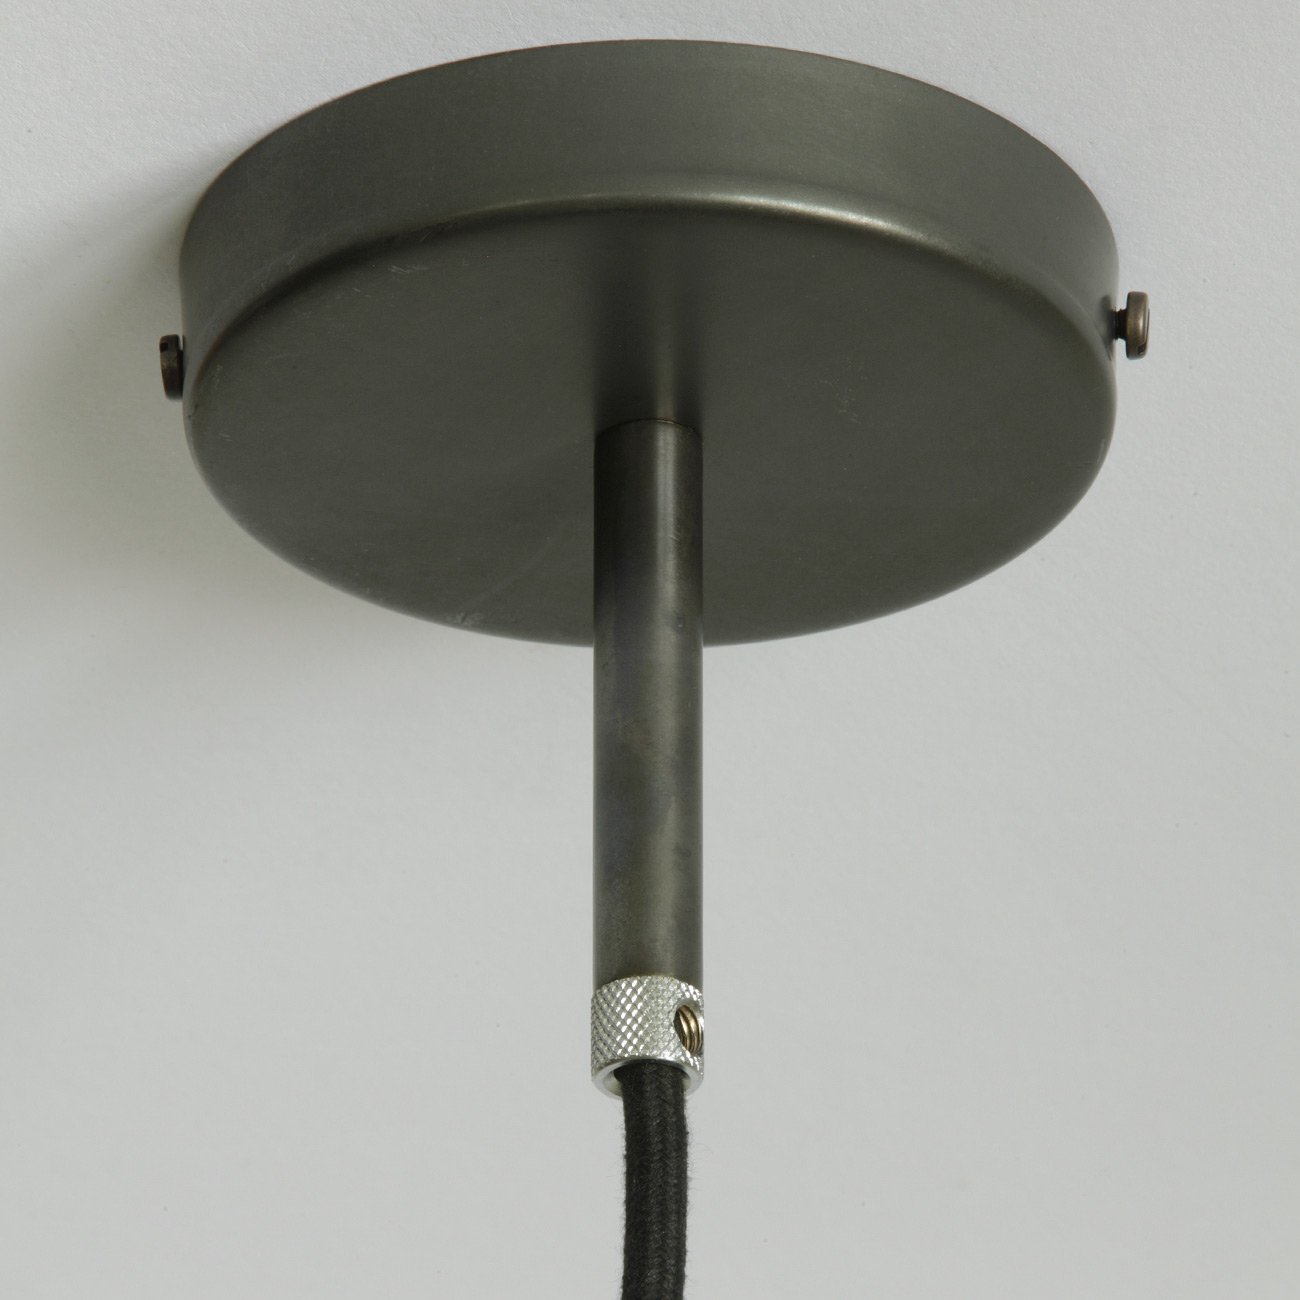 Pendelleuchten mit dunklem Rauchglas-Zylinder BROMPTON: Schönes Deckenteil in dunkel patiniertem Messing mit Ø 105 mm